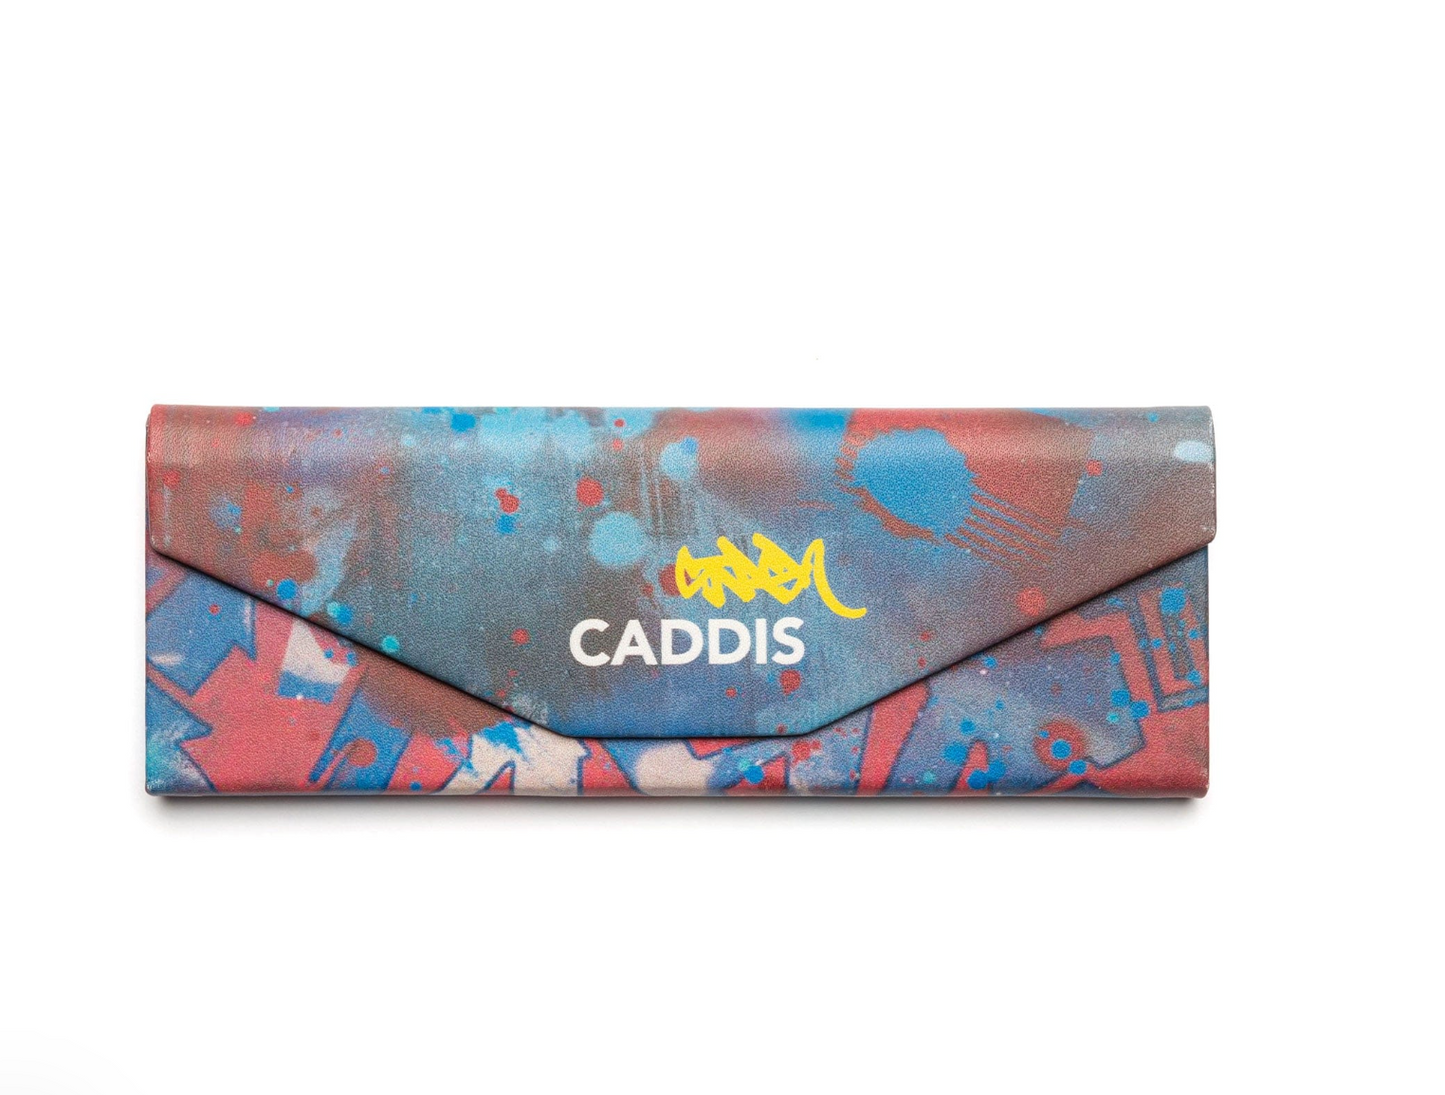 Caddis - Stash Origami Case